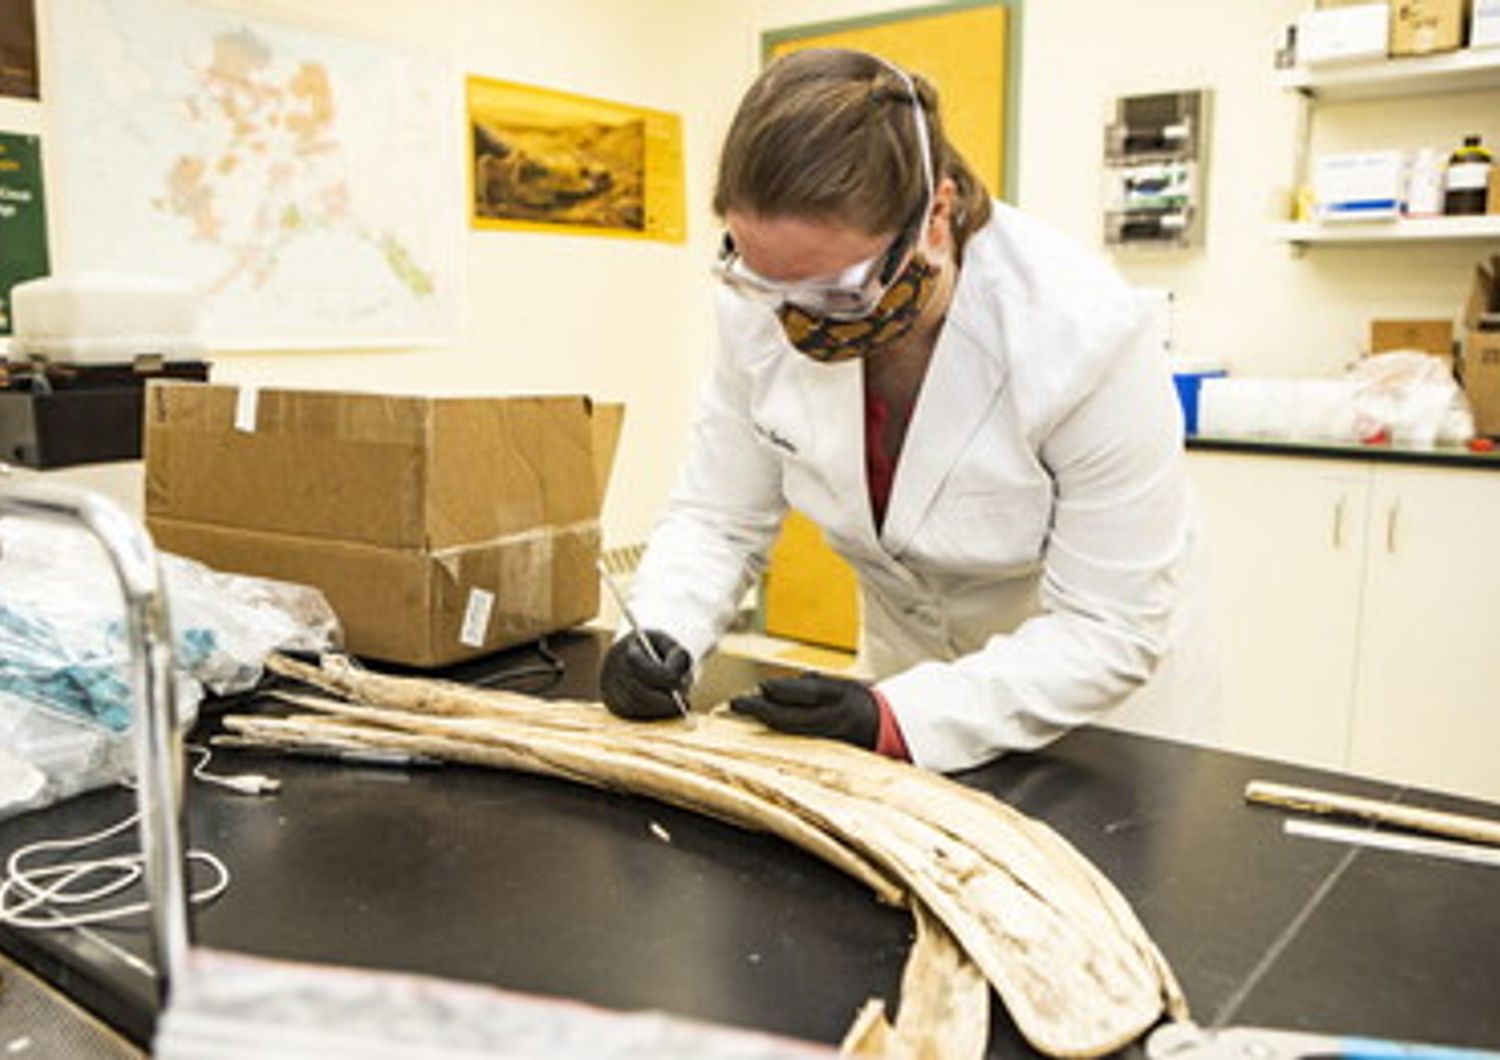 Karen Spaleta campiona i resti di una zanna di mammut